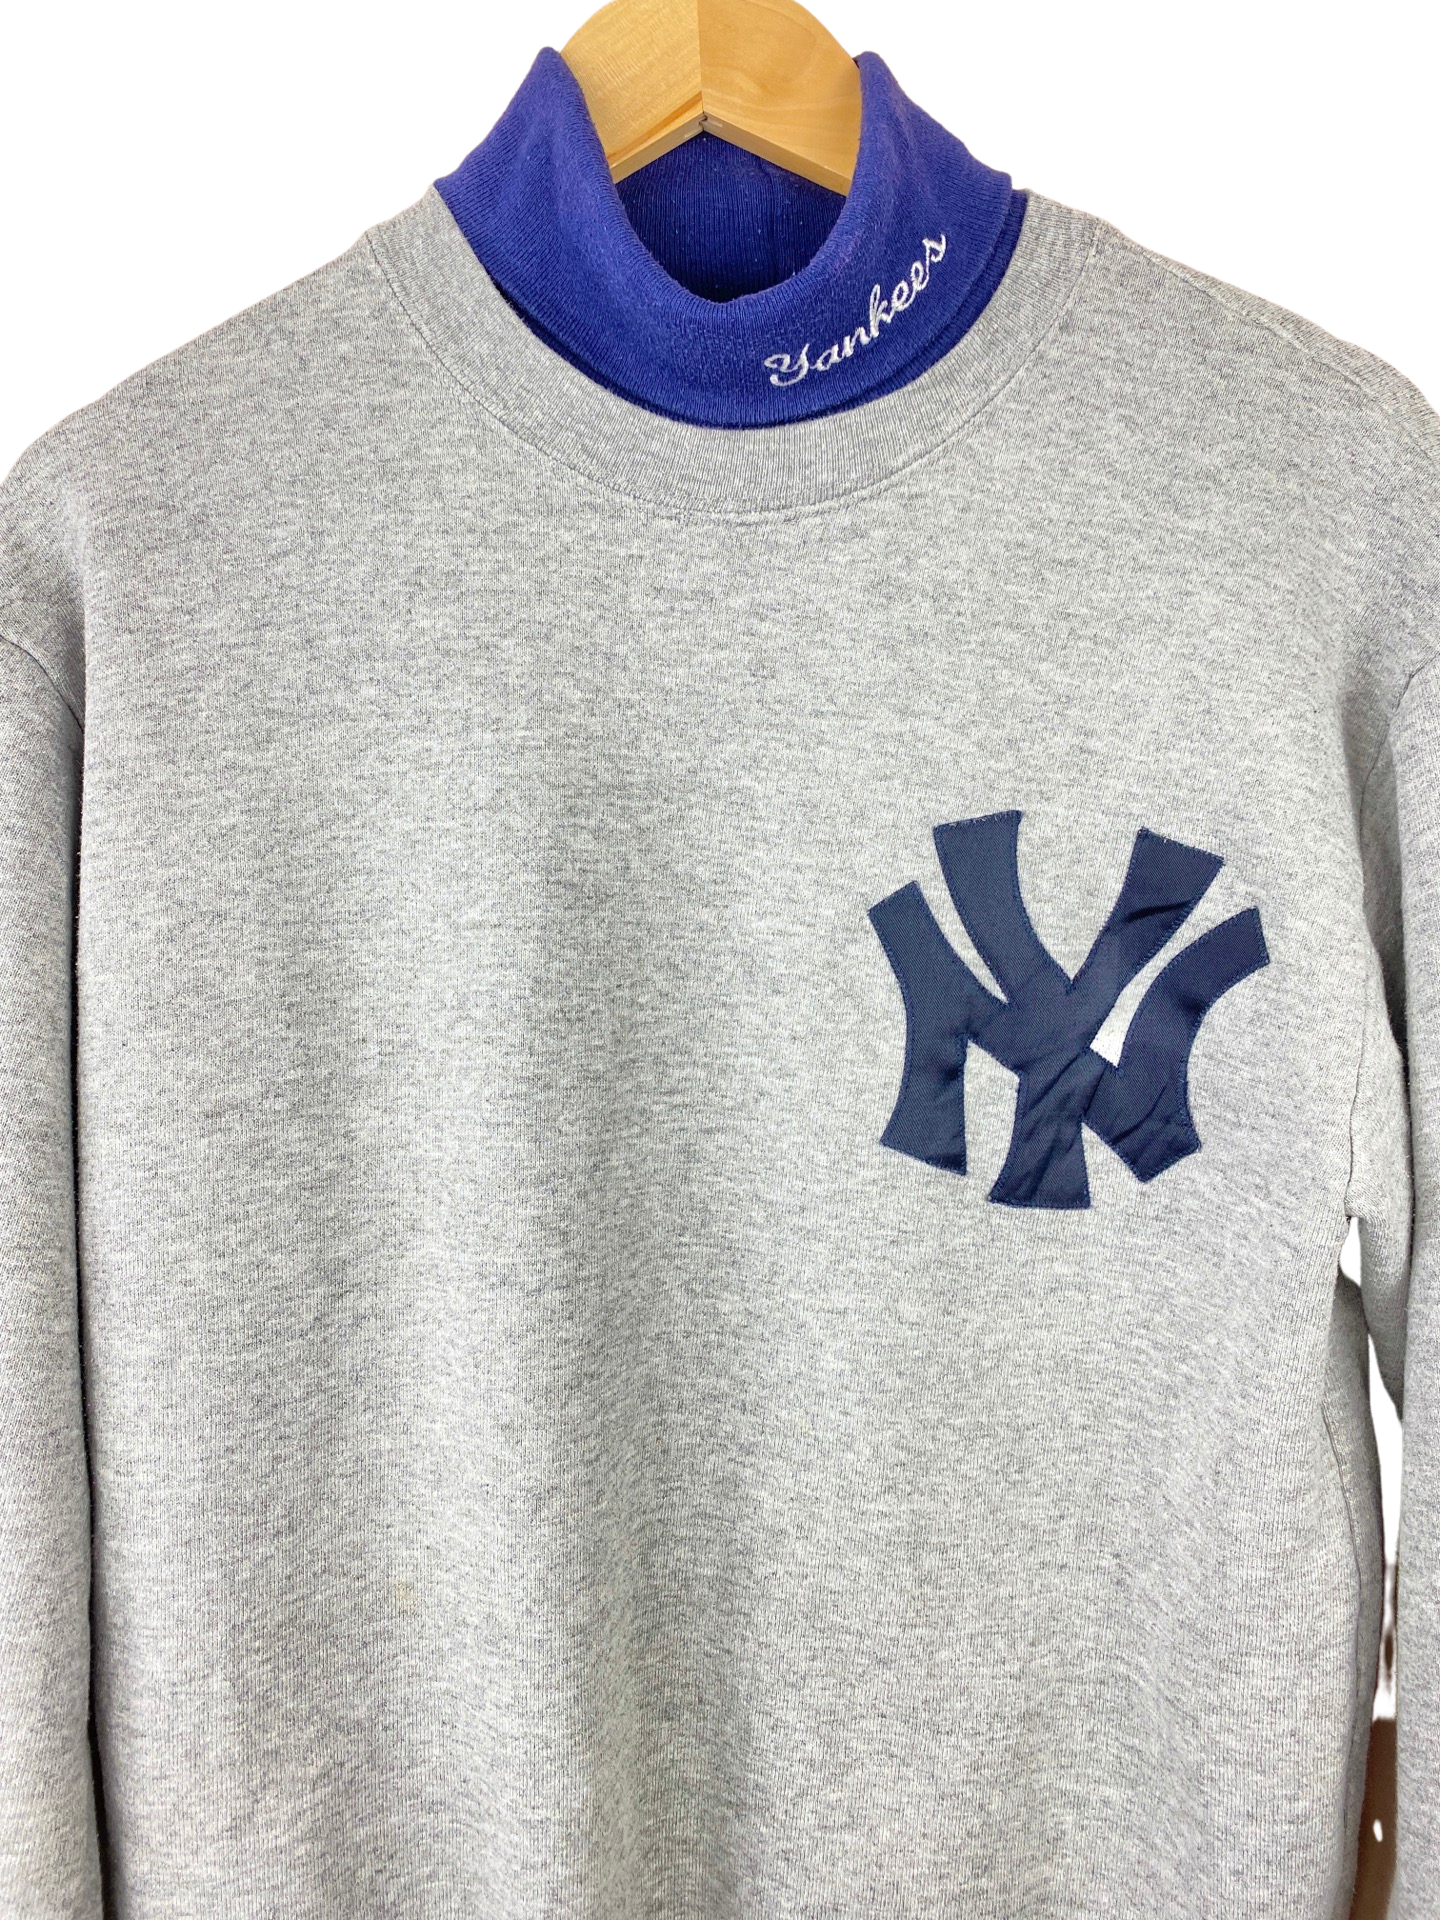 Vintage New York Yankees Crewneck Sweatshirt at